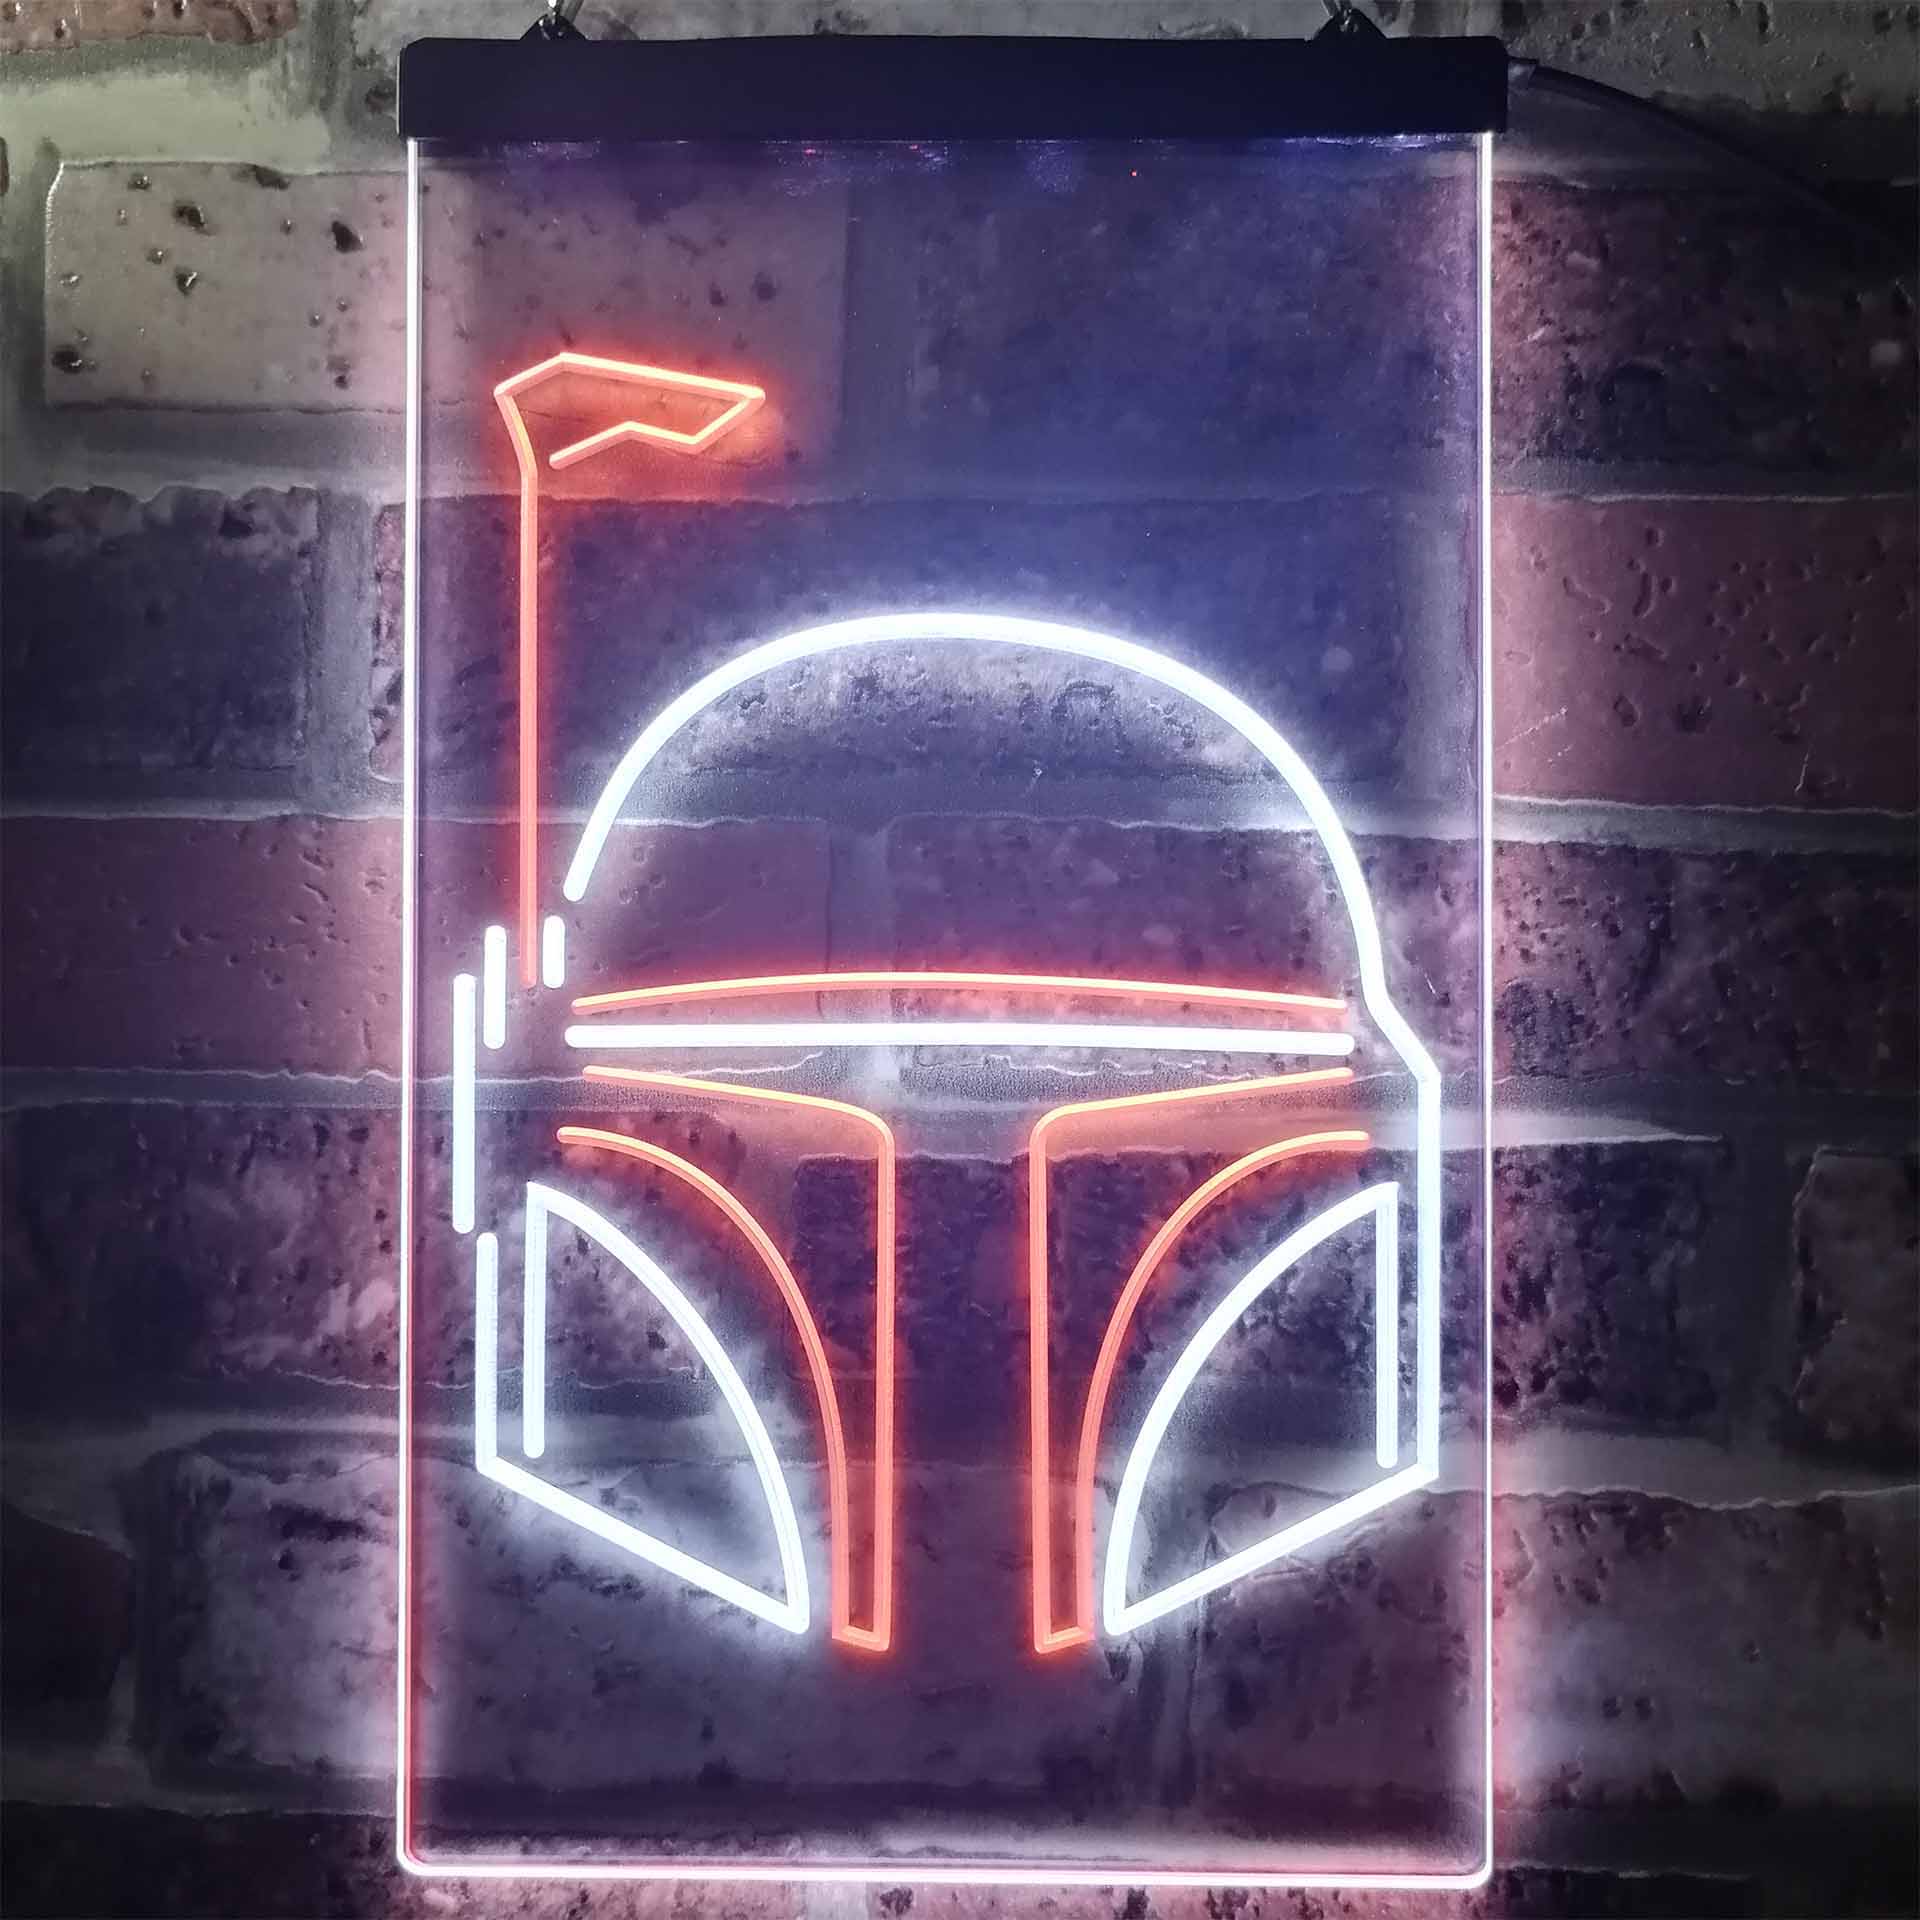 Star Wars Boba Fett Helmet Neon-Like LED Sign | FanSignsTime